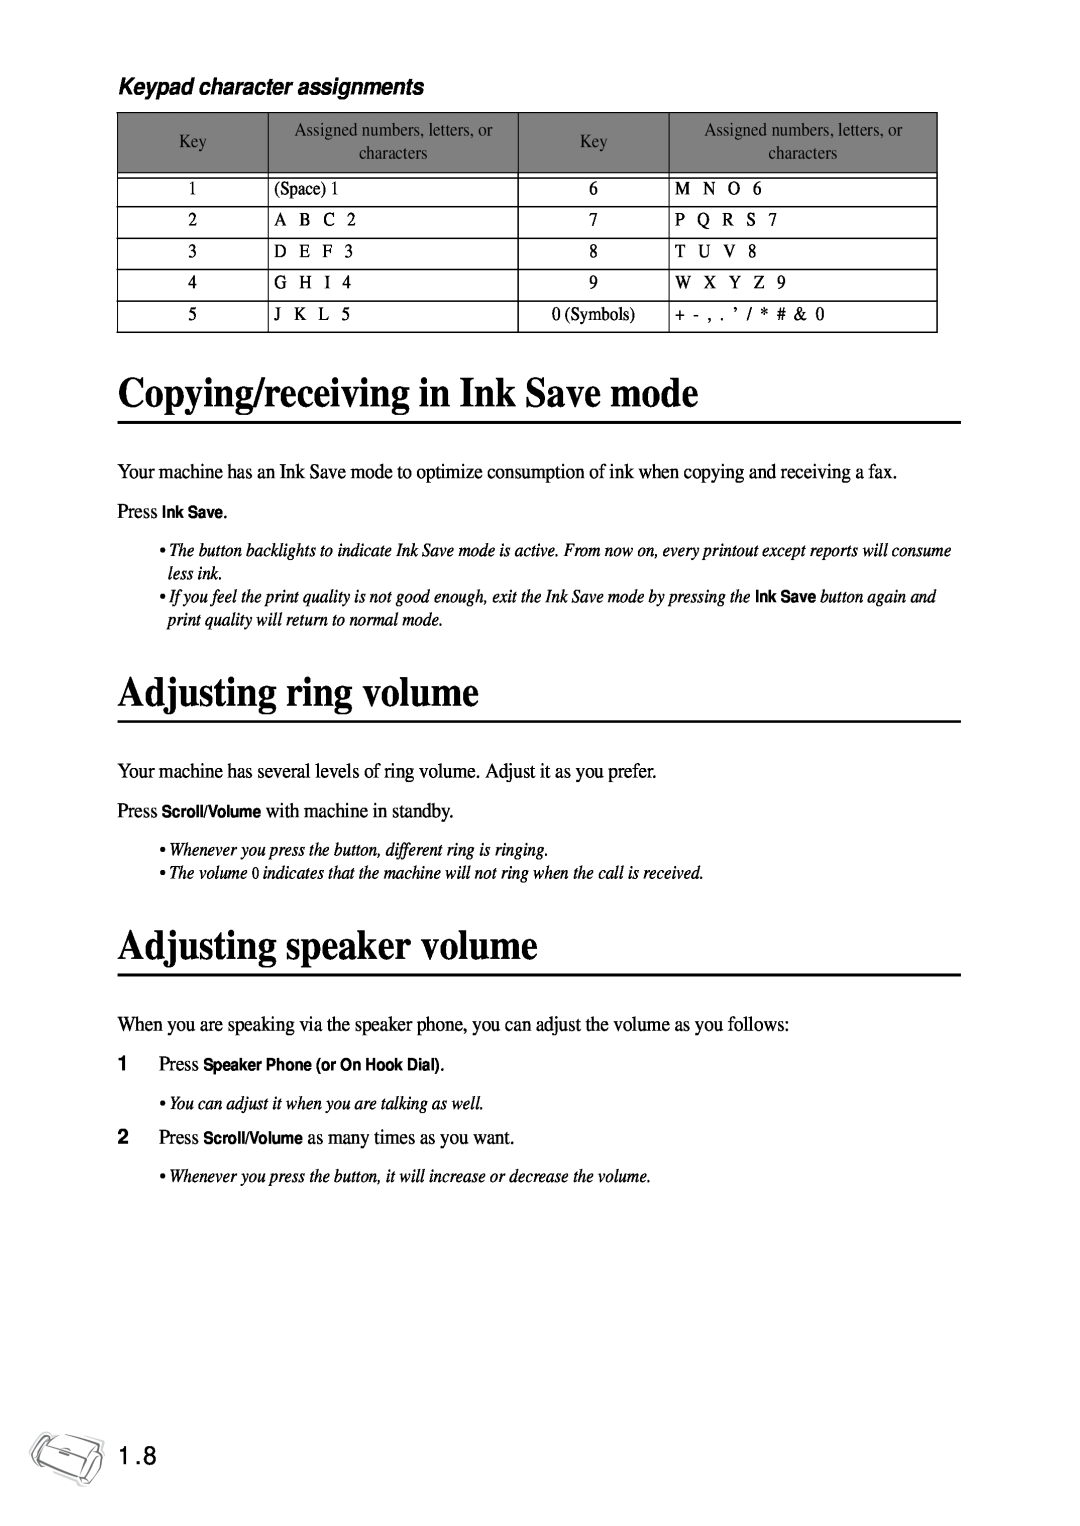 Samsung SF-340 Series manual Copying/receiving in Ink Save mode, Adjusting ring volume, Adjusting speaker volume 